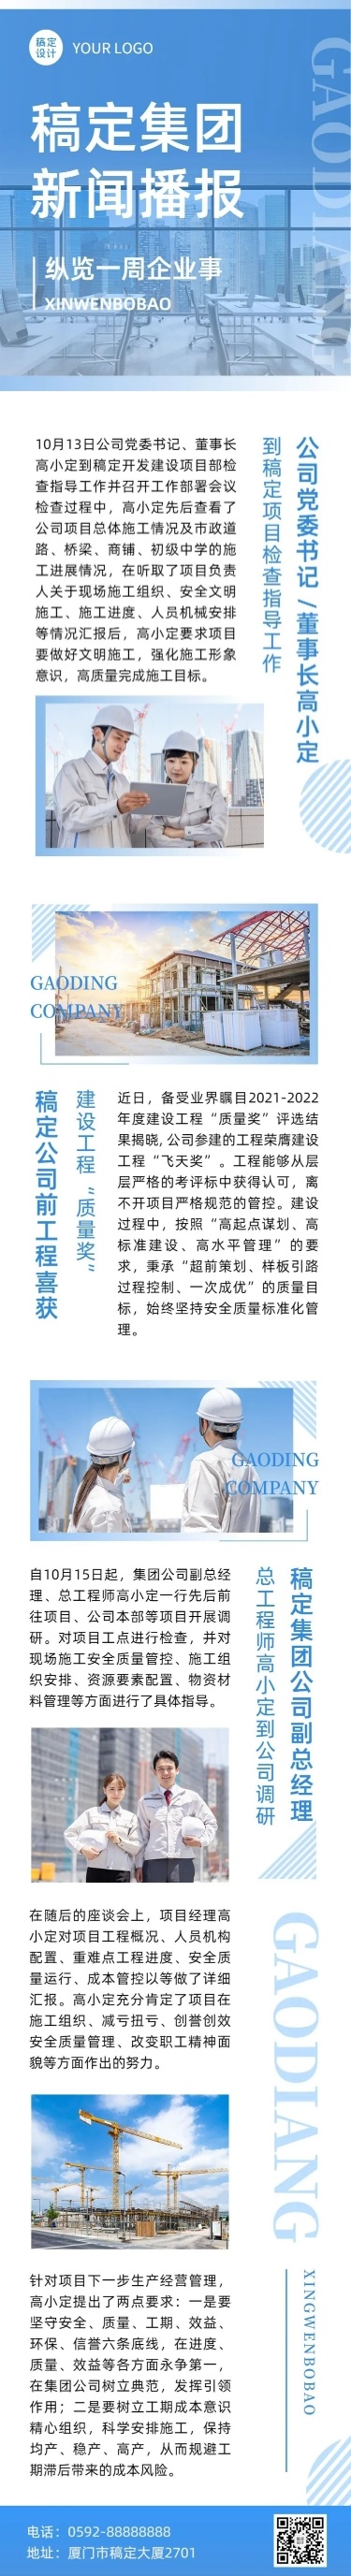 企业商务行业资讯集团周刊周报文章长图